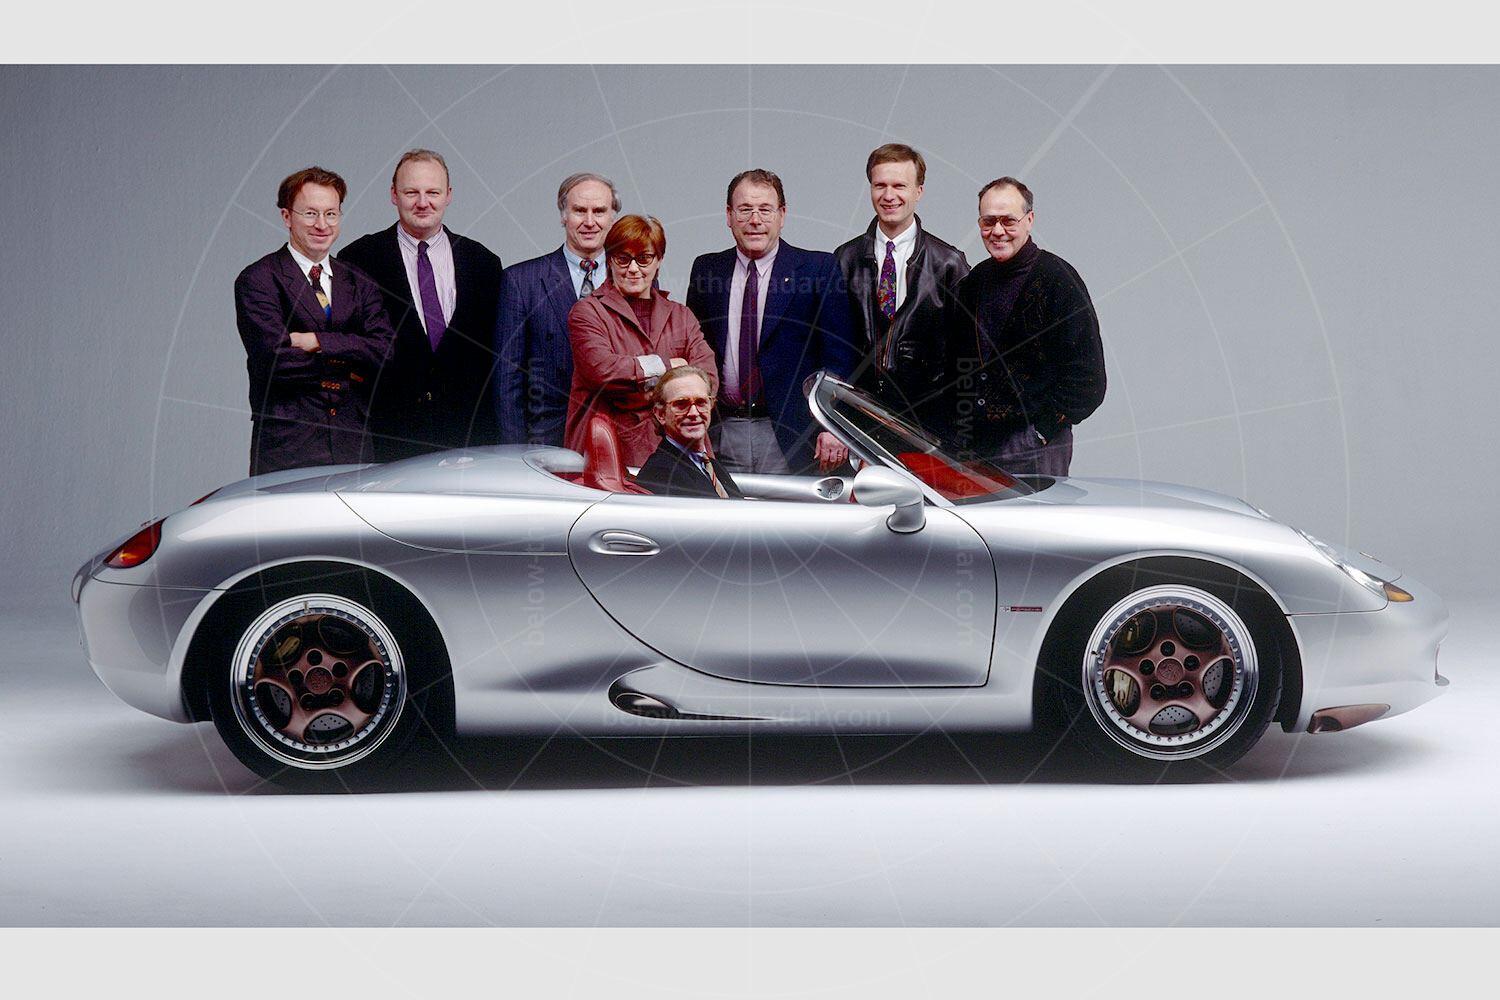 The design team behind the Porsche Boxster concept Pic: Porsche | The design team behind the Porsche Boxster concept